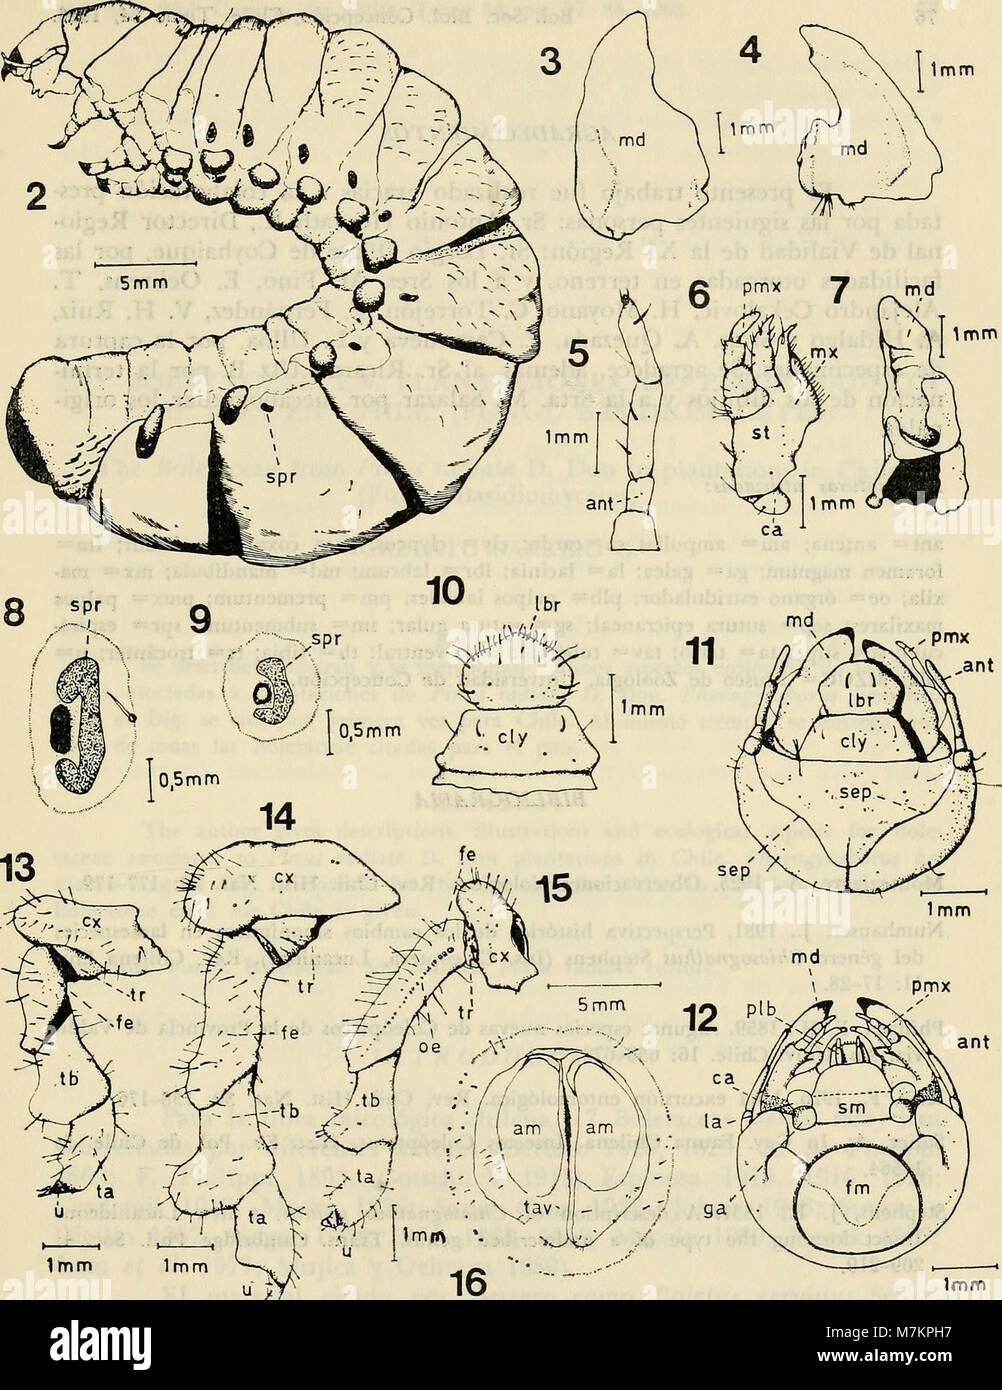 Boletin de la Sociedad de Biología de Concepción (1983) (20201427869) Stockfoto